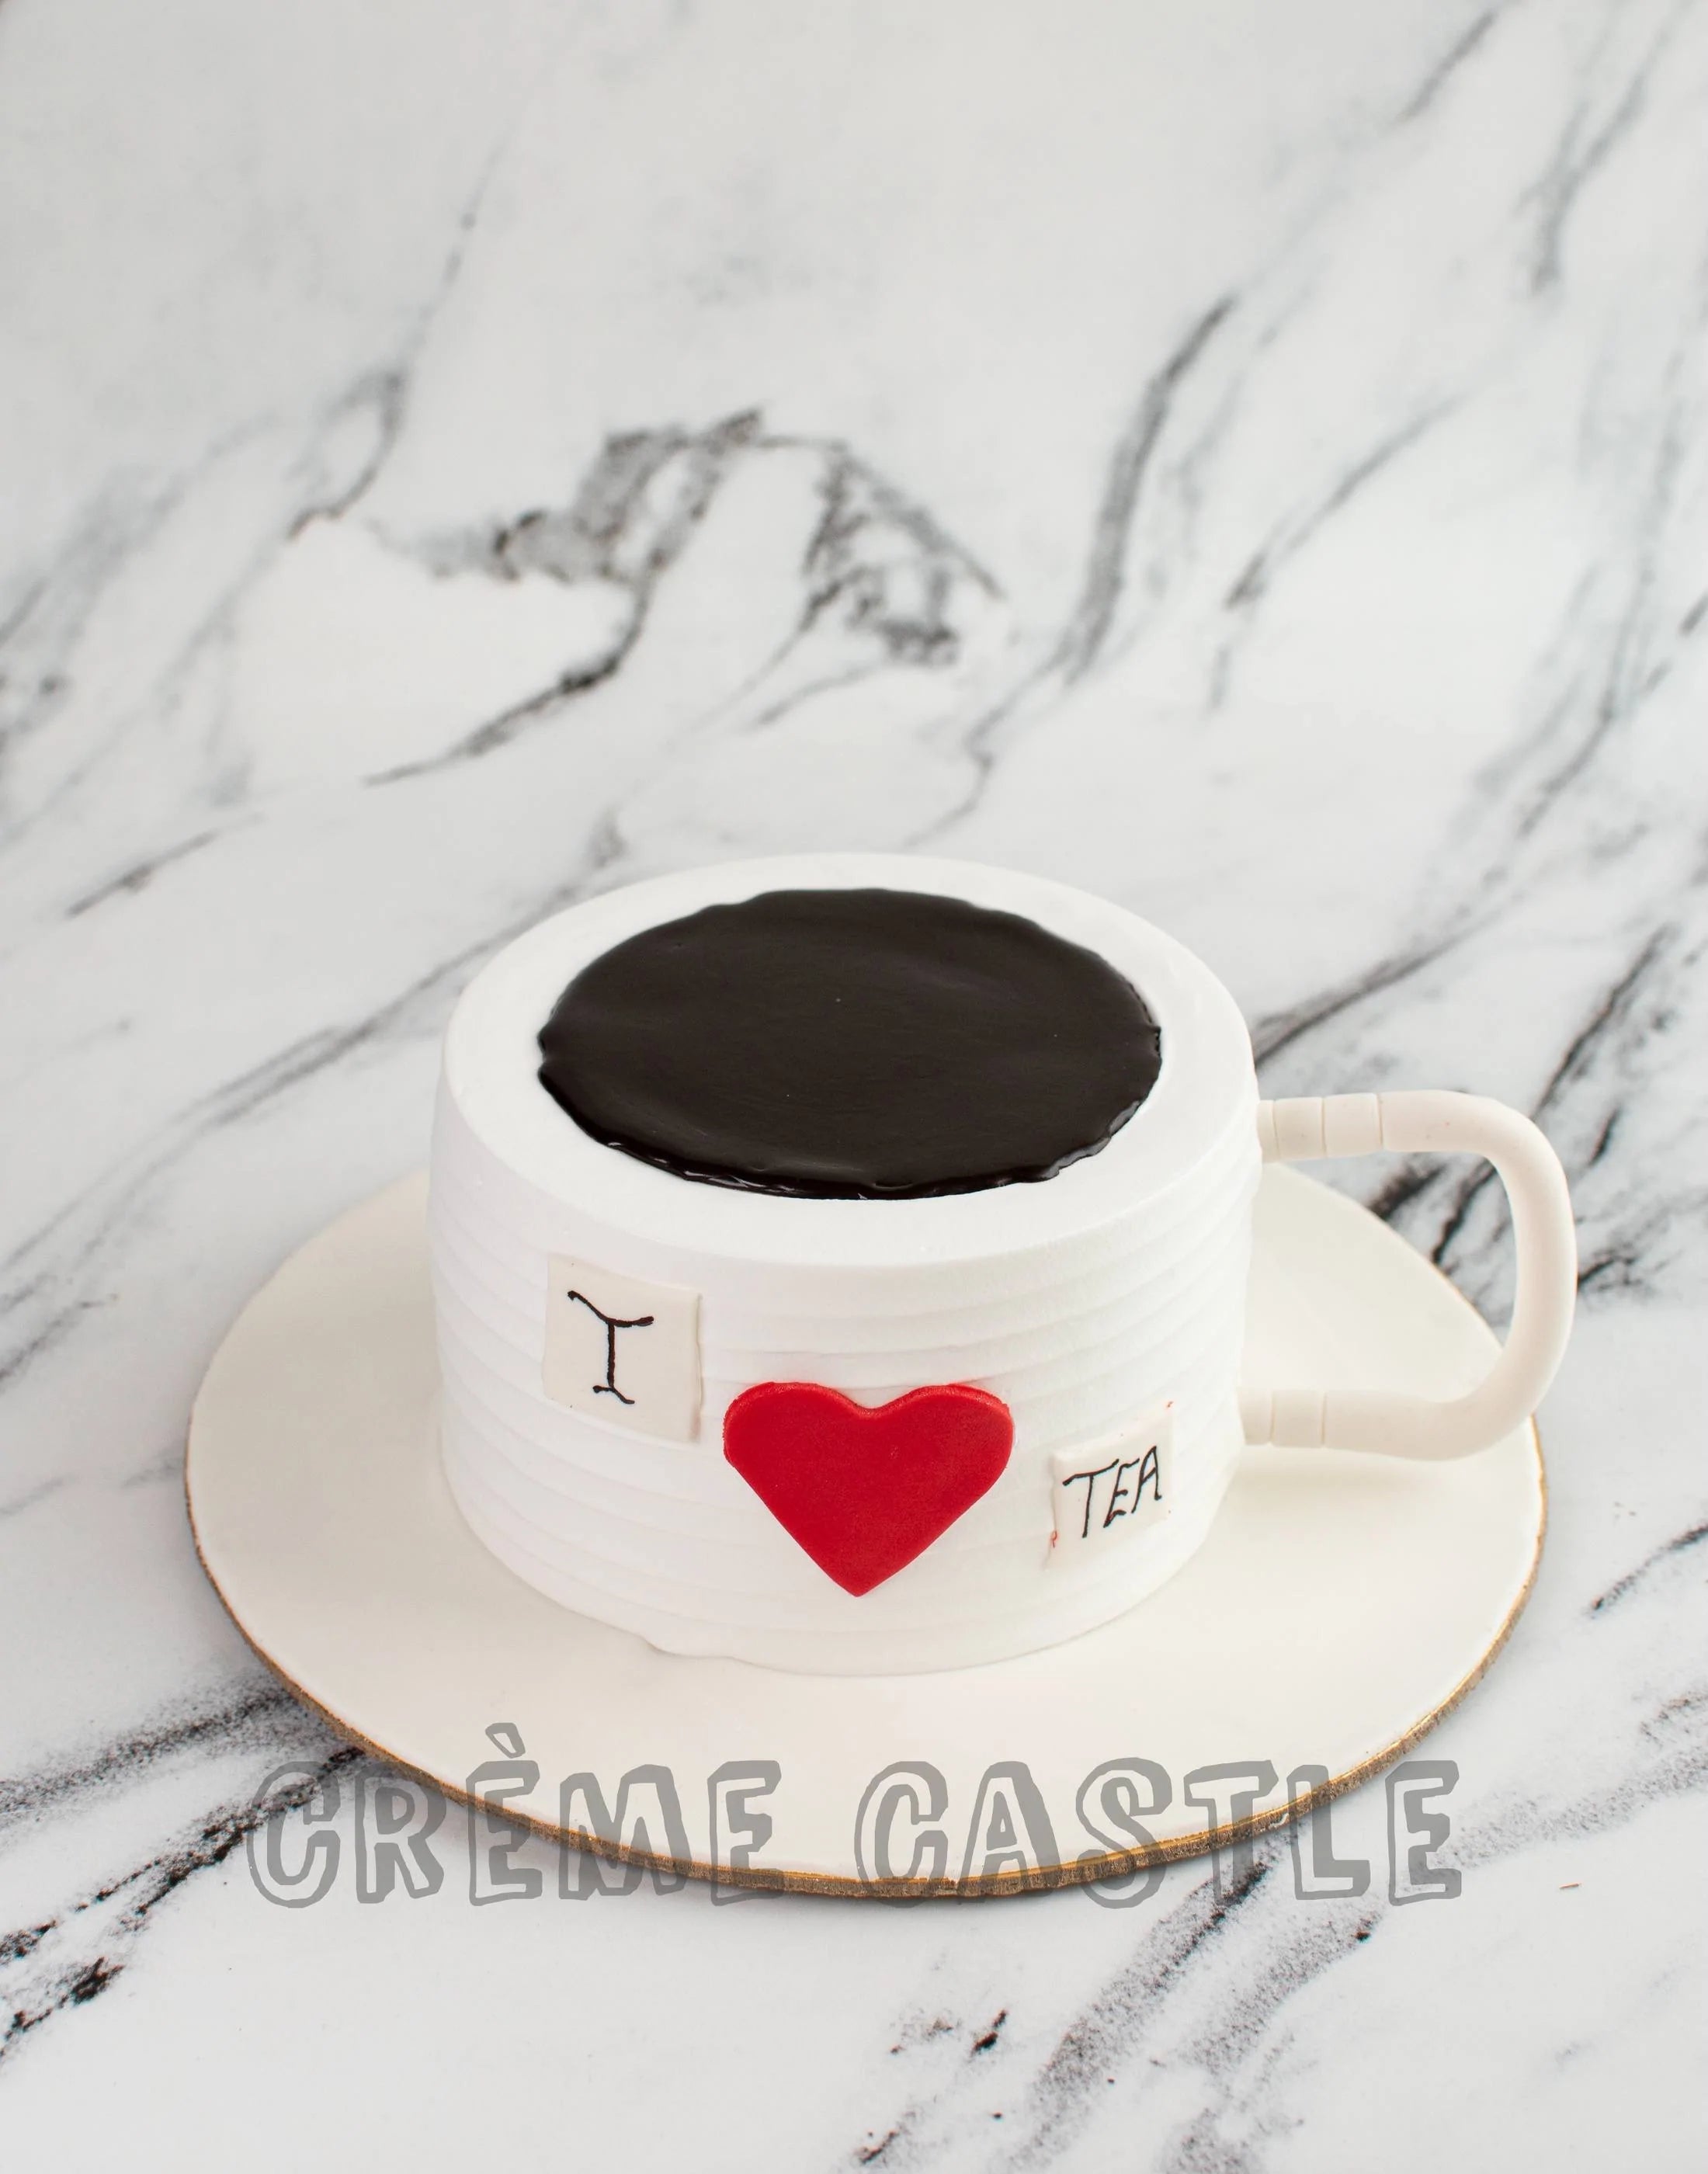 Buy/Send Frosty Mug Designer Chocolate Cake- 1.5 Kg Online- FNP